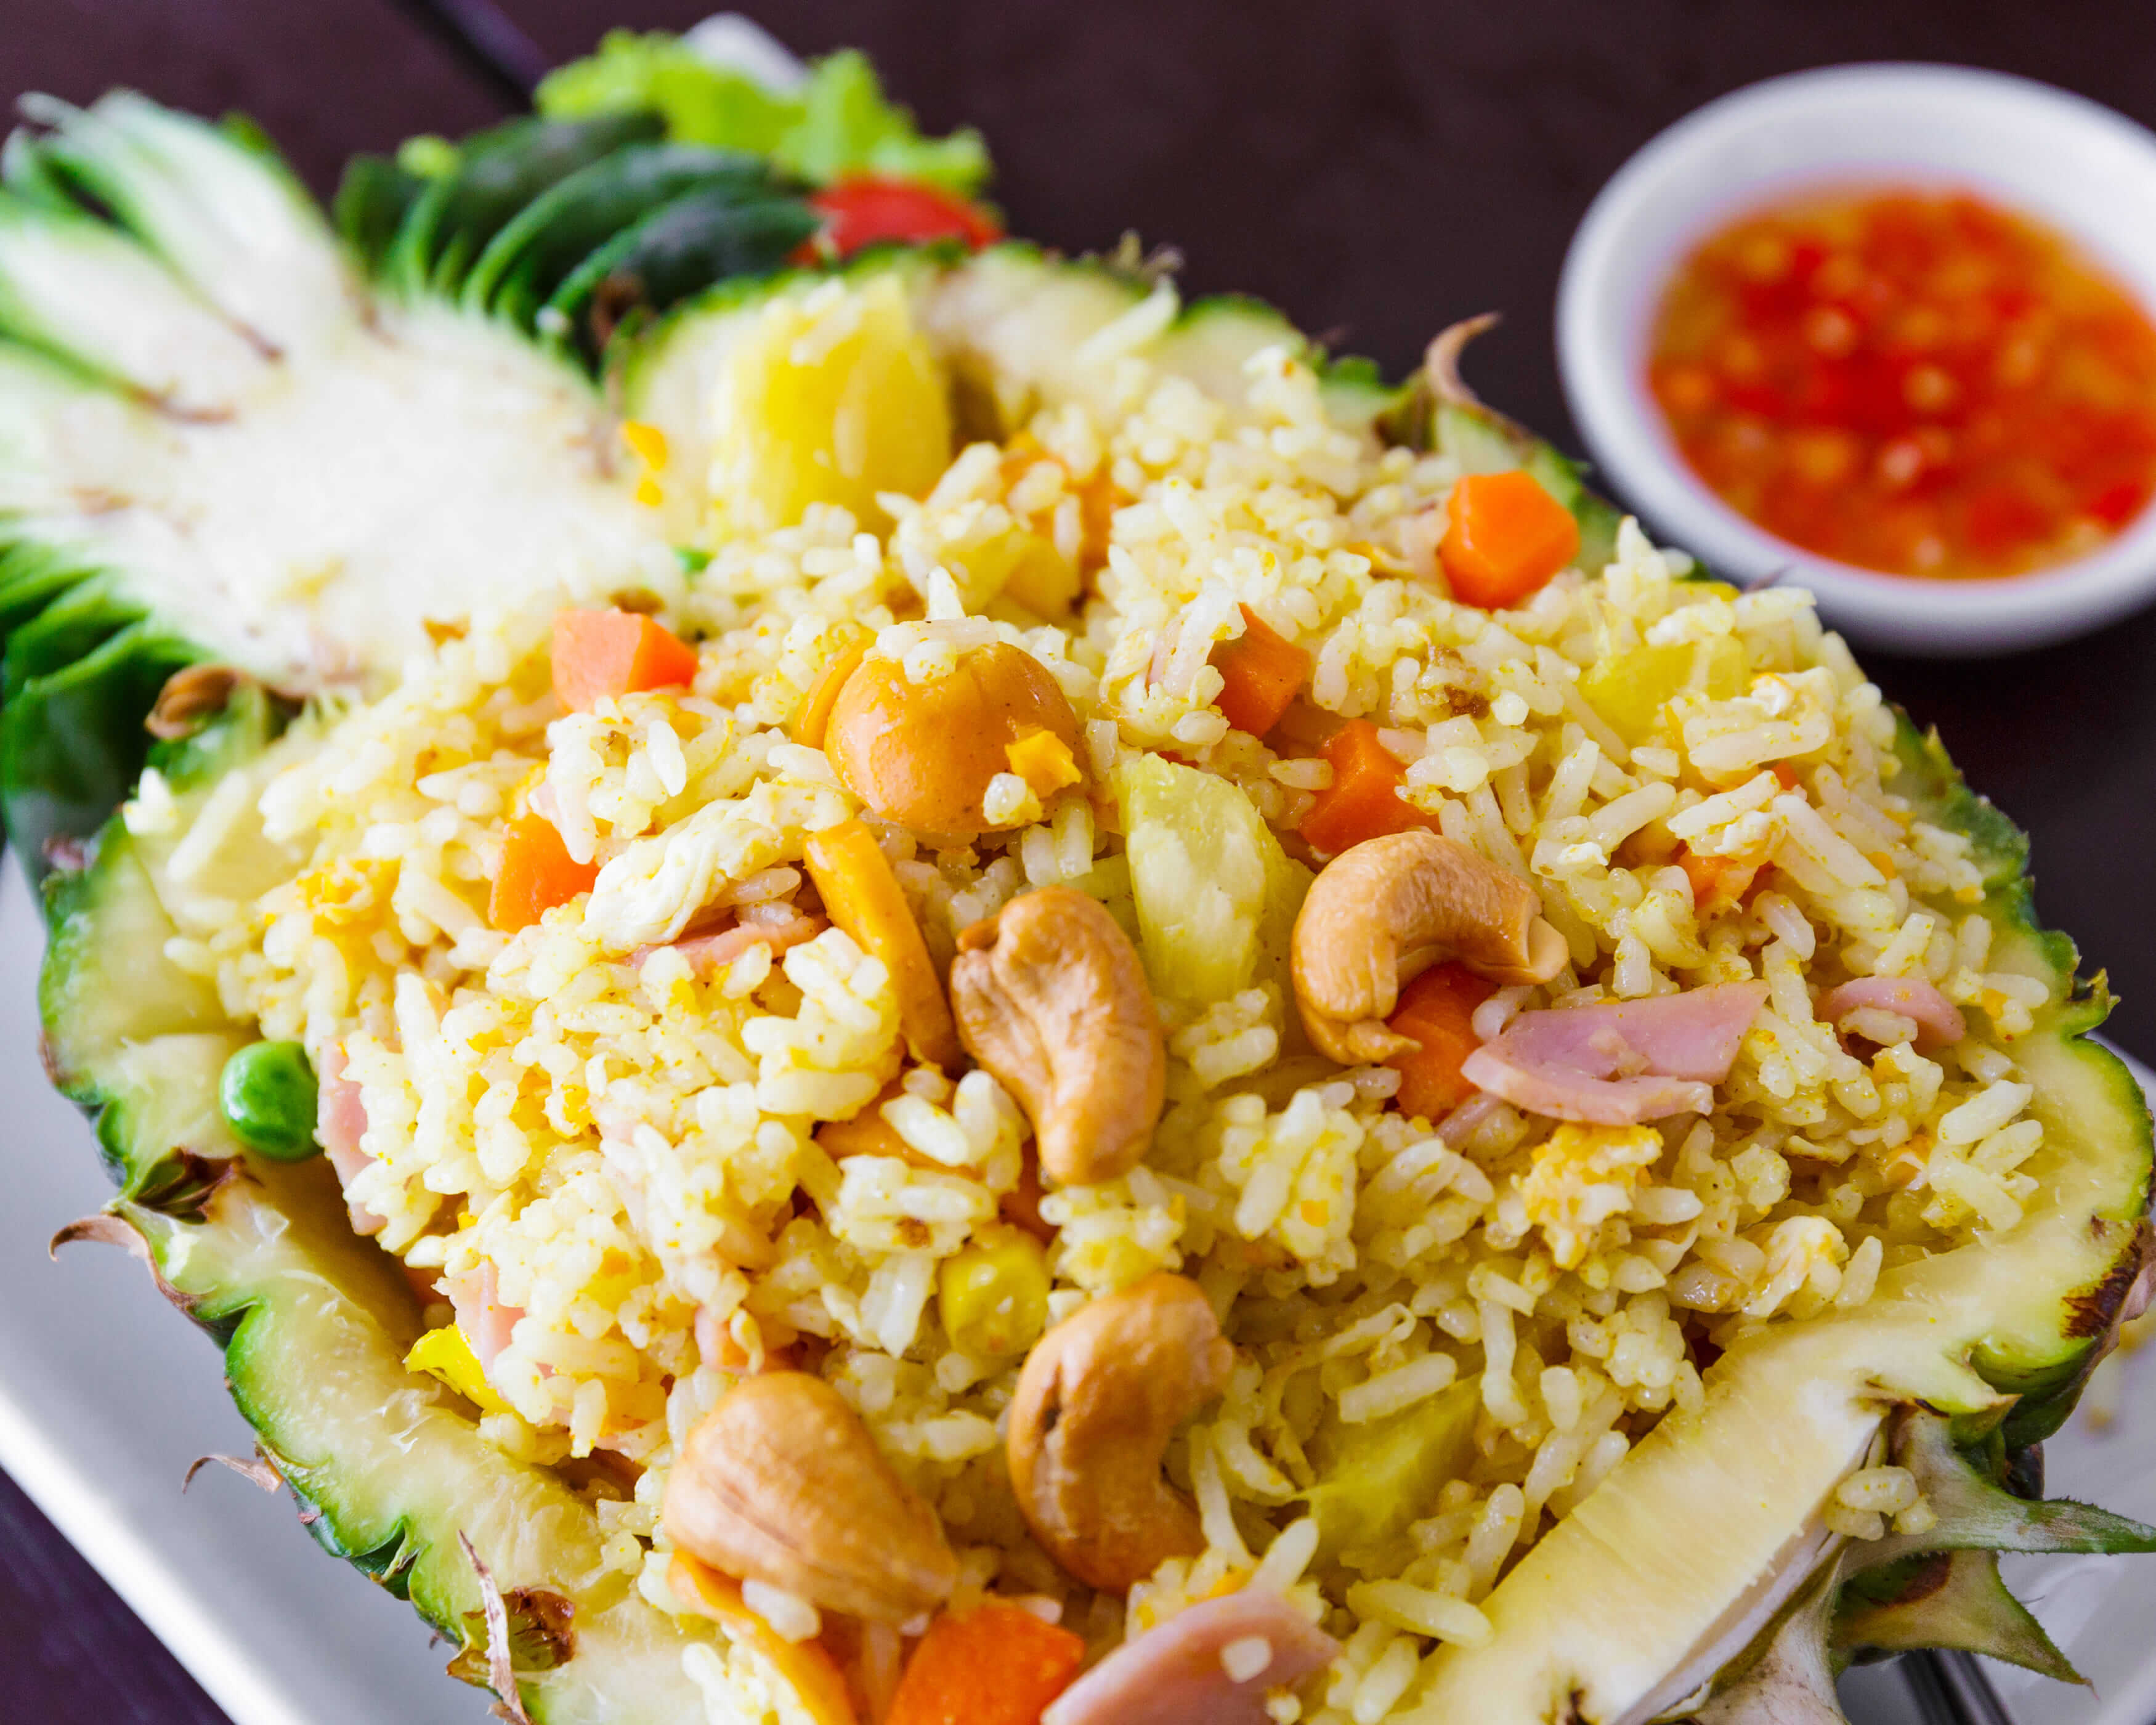 LUV Thai Cuisine